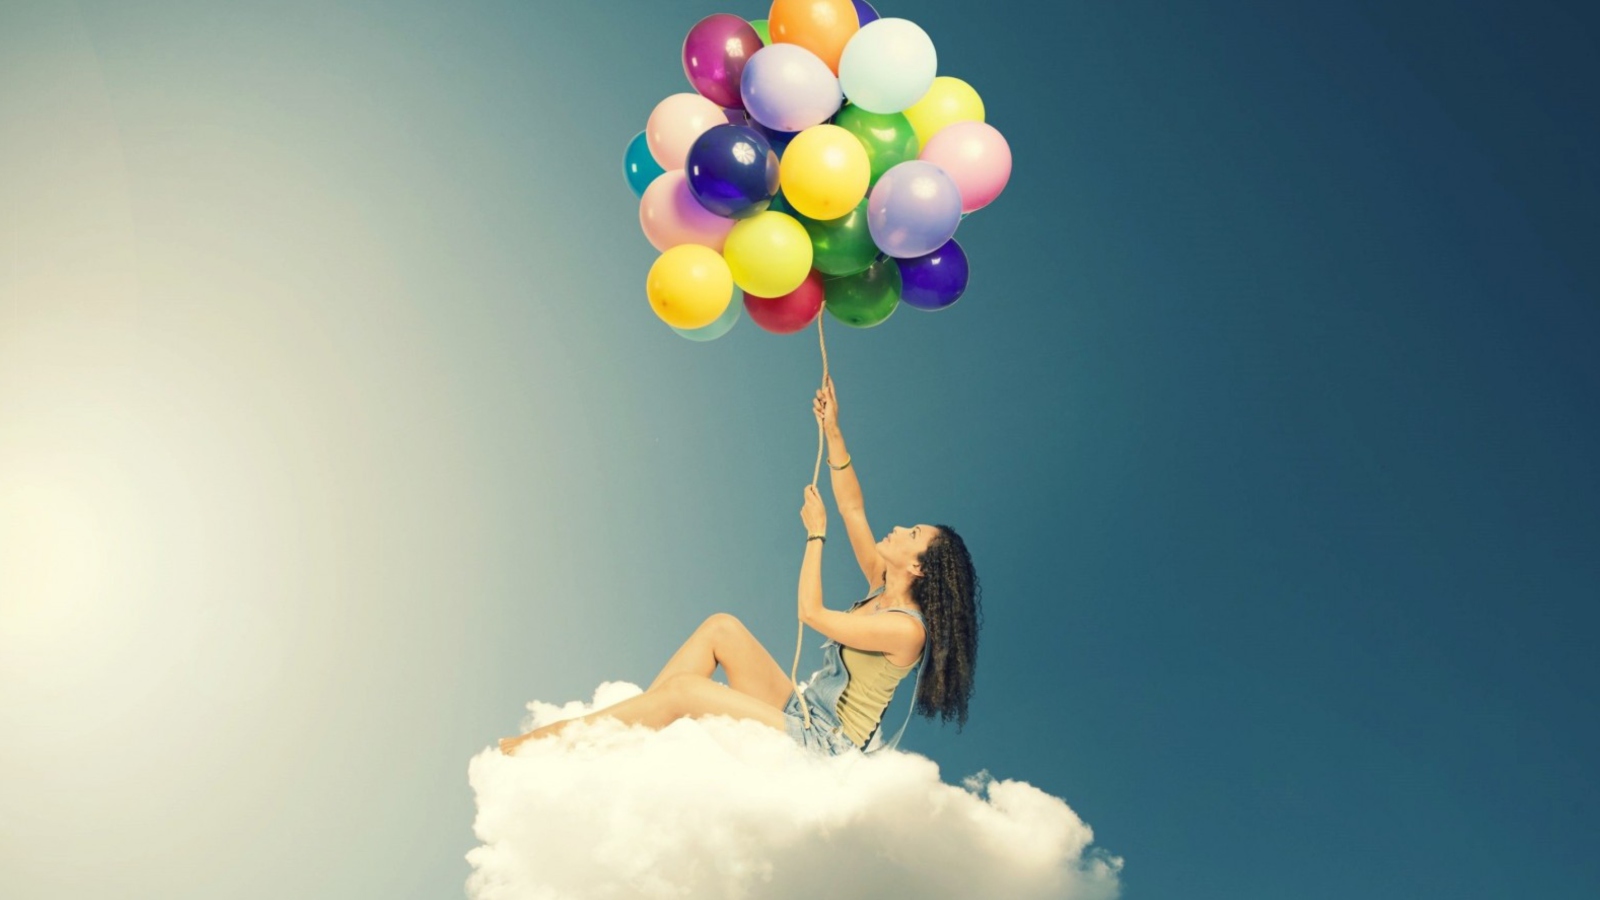 Обои Flyin High On Cloud With Balloons 1600x900